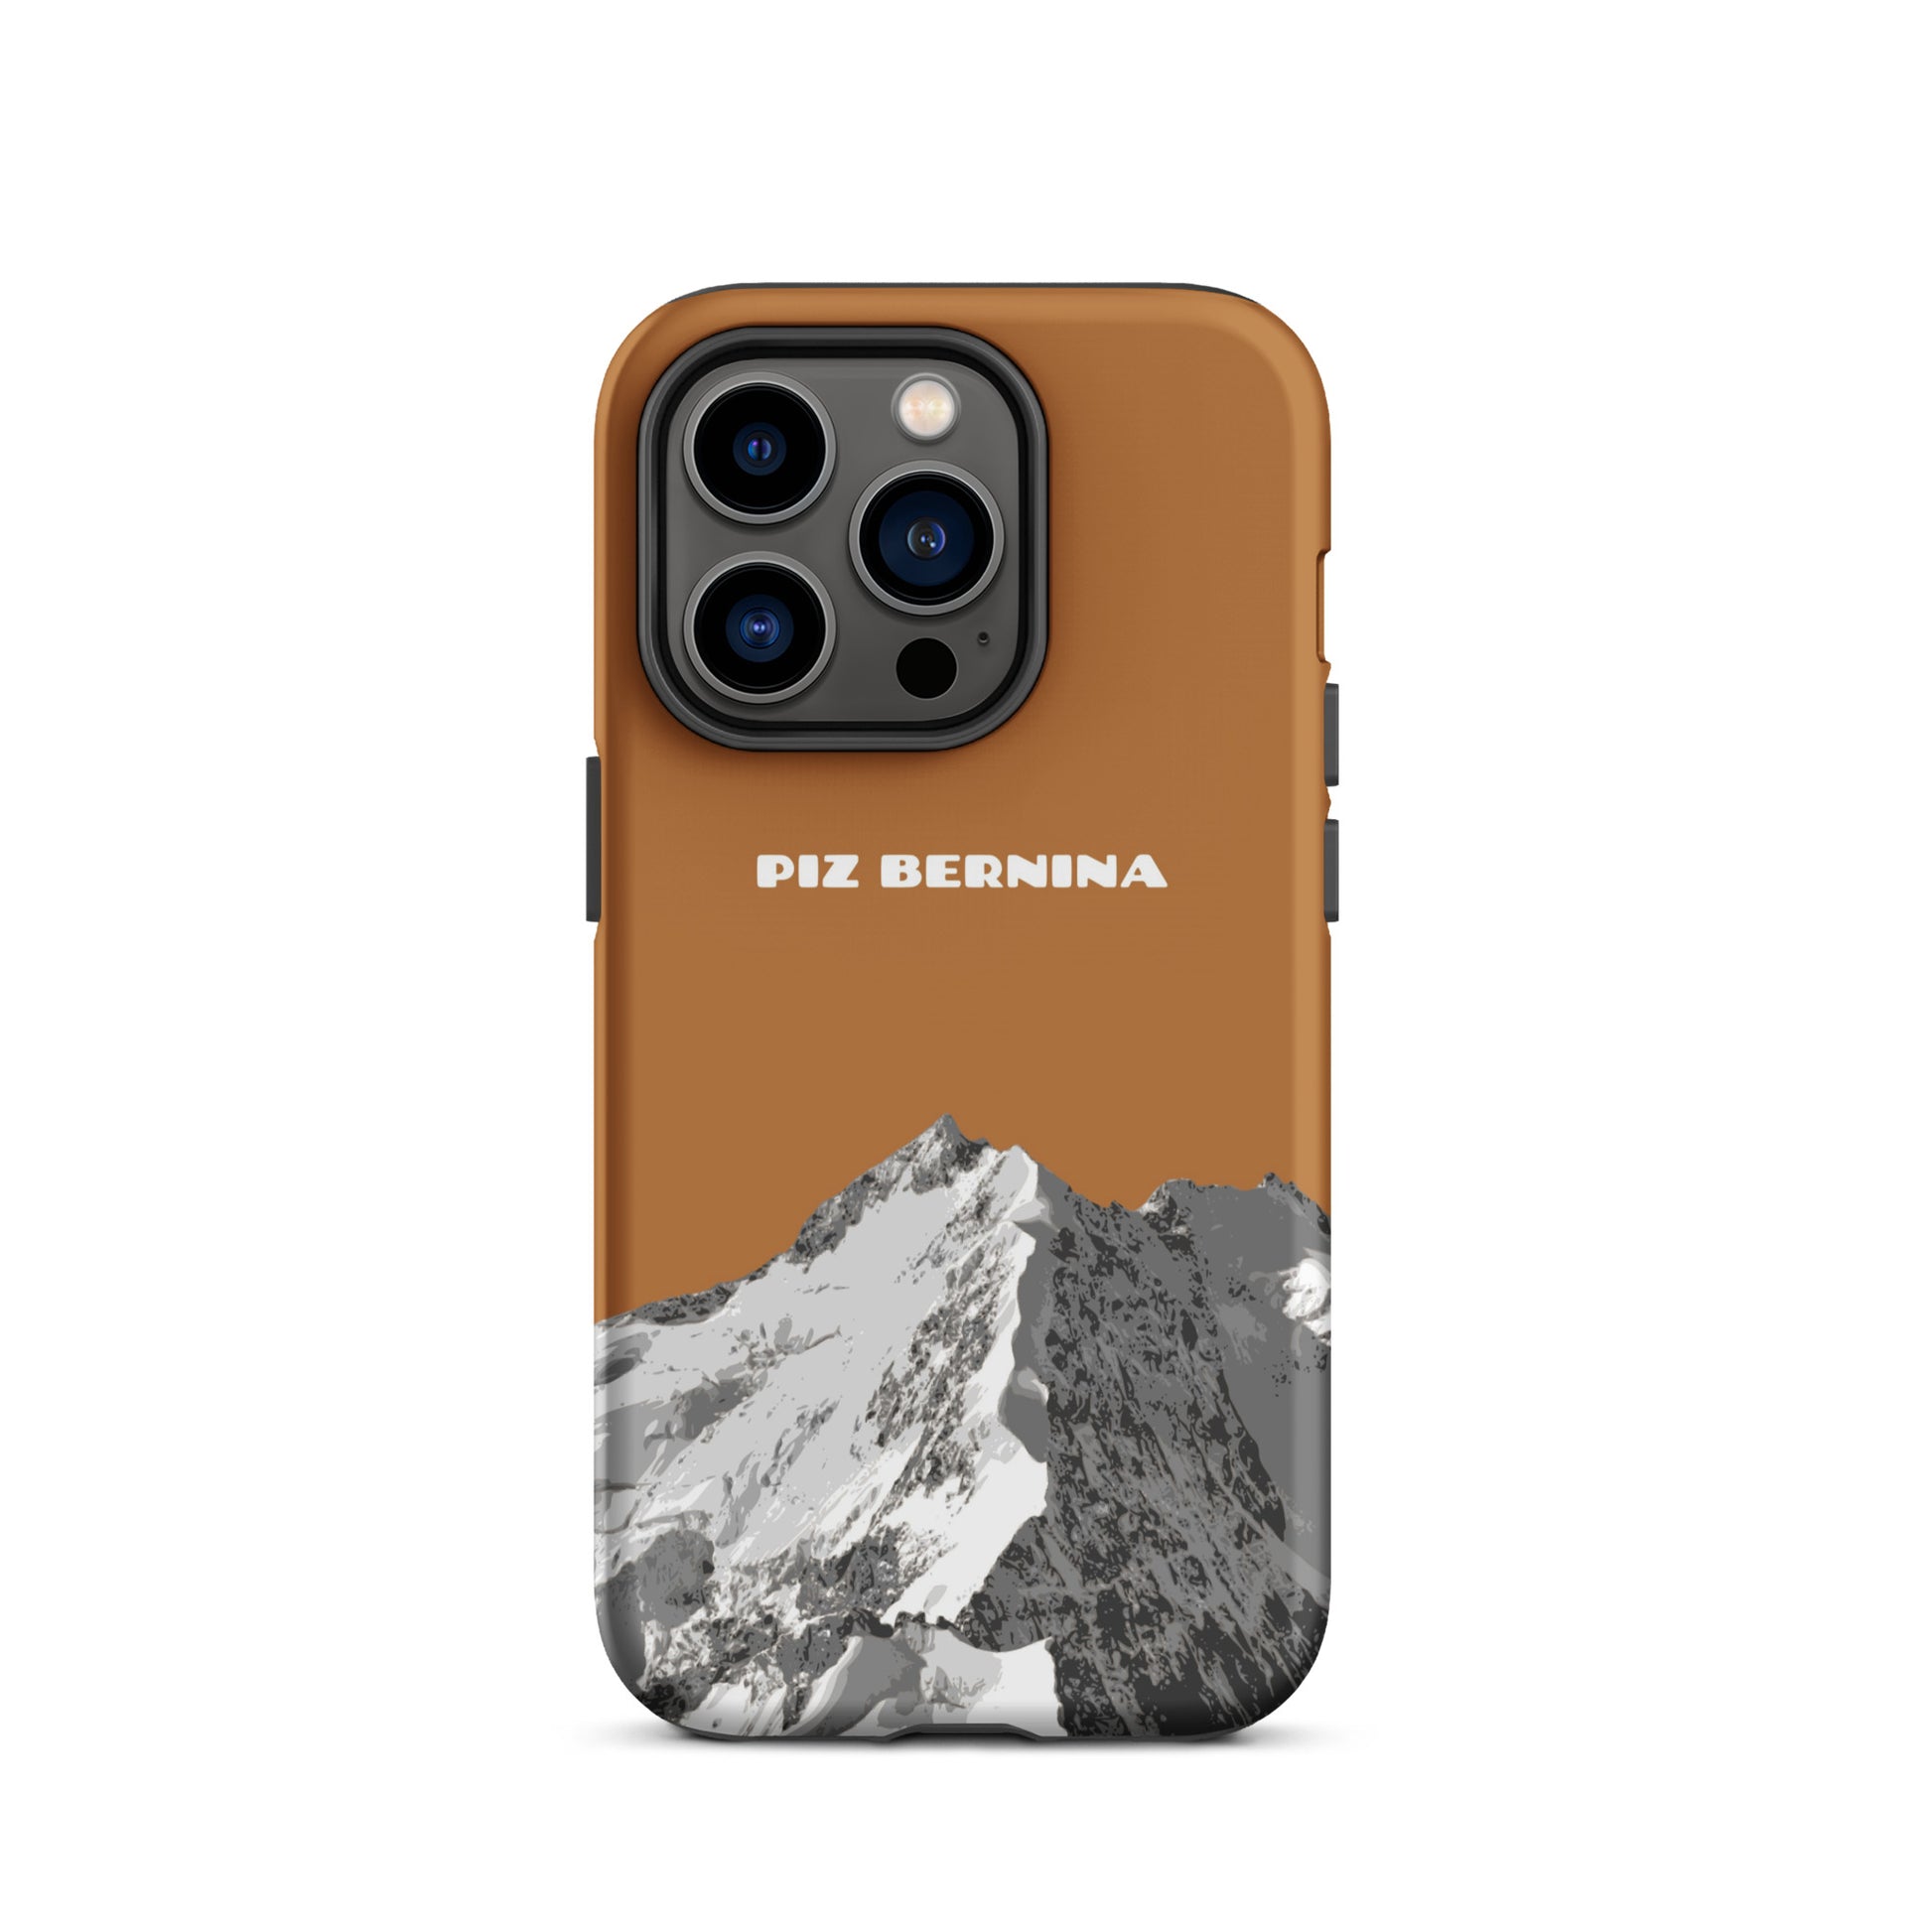 Hülle für das iPhone 14 Pro von Apple in der Farbe Kupfer, dass den Piz Bernina in Graubünden zeigt.